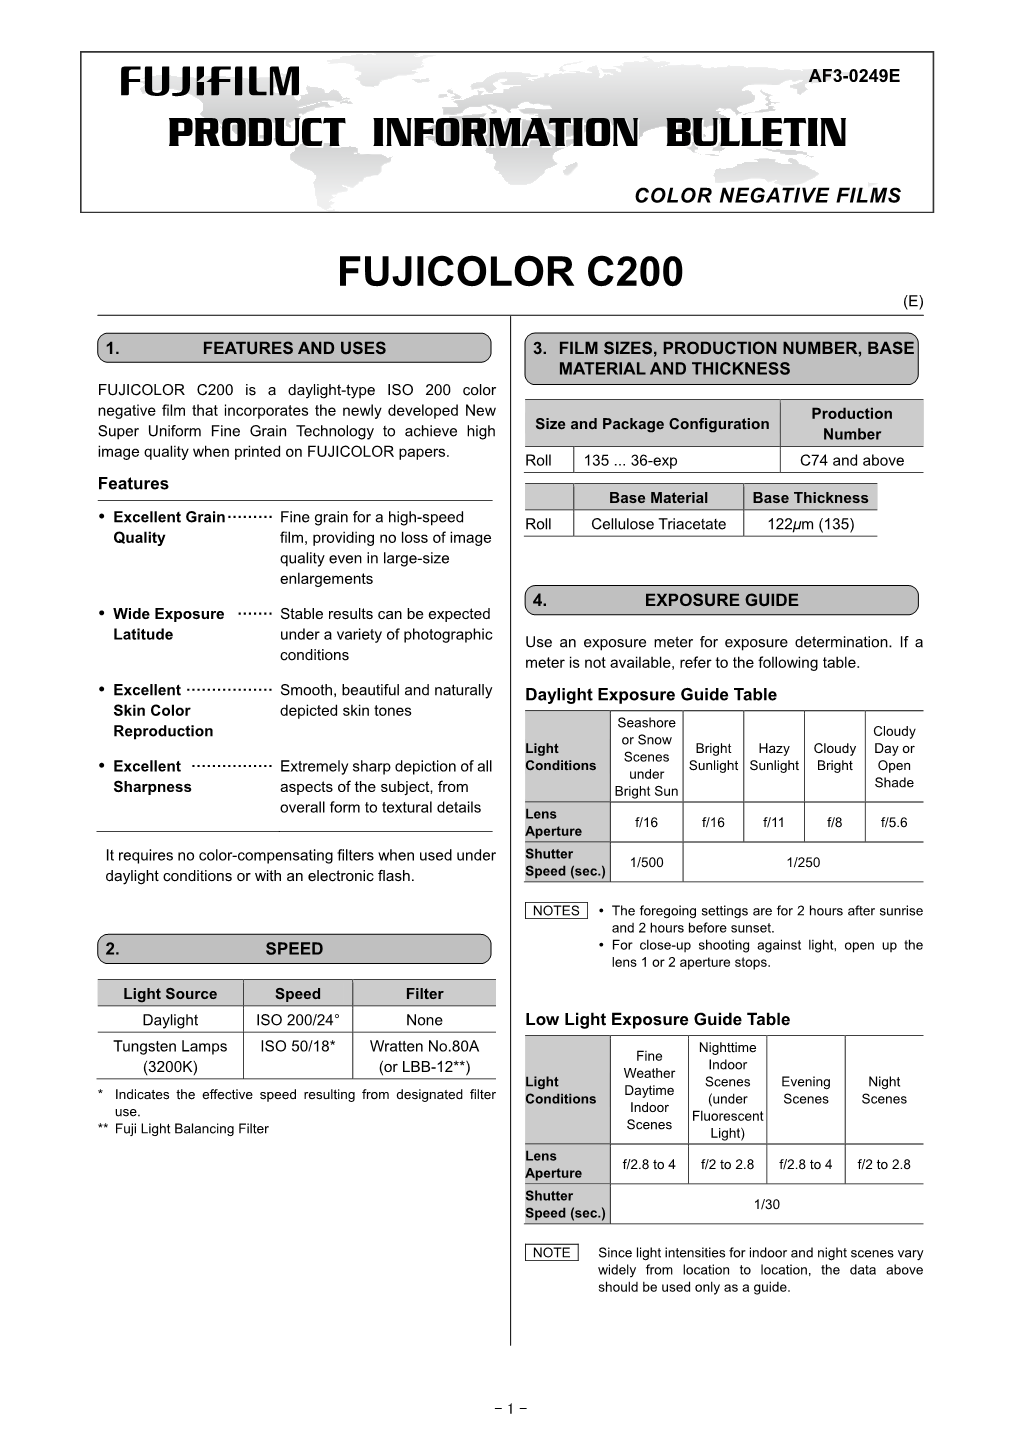 Pib/Fujicolor C200(Af3-0249E)